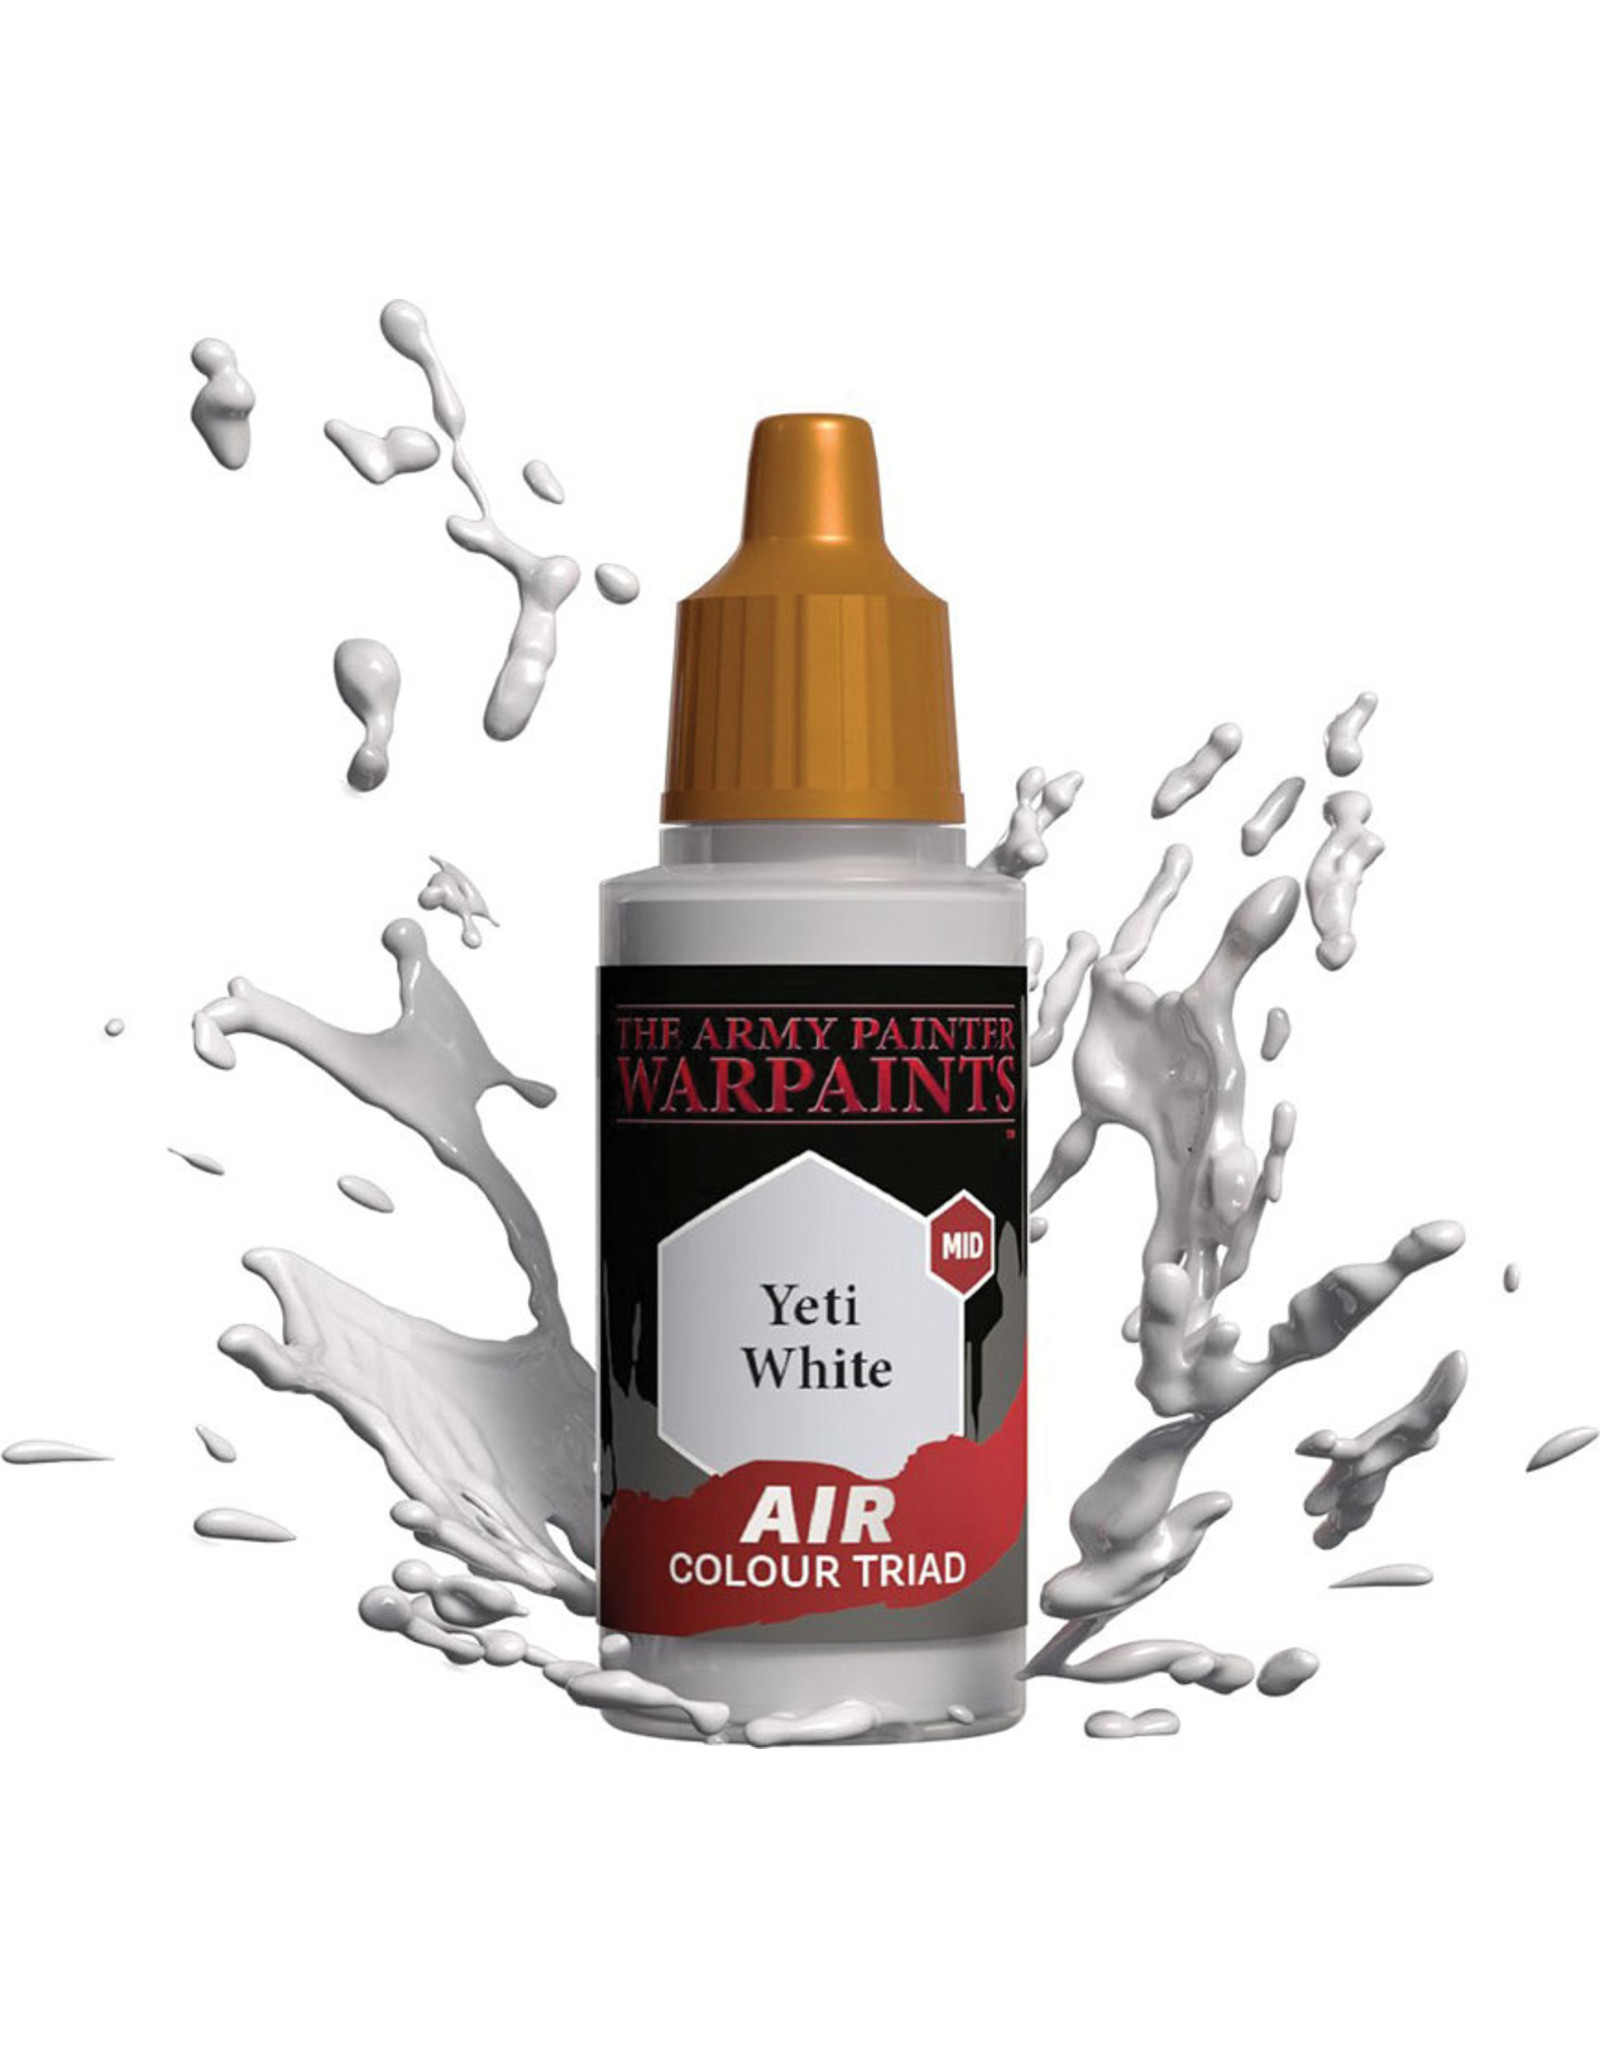 Army Painter Warpaint Air: Yeti White, 18ml.